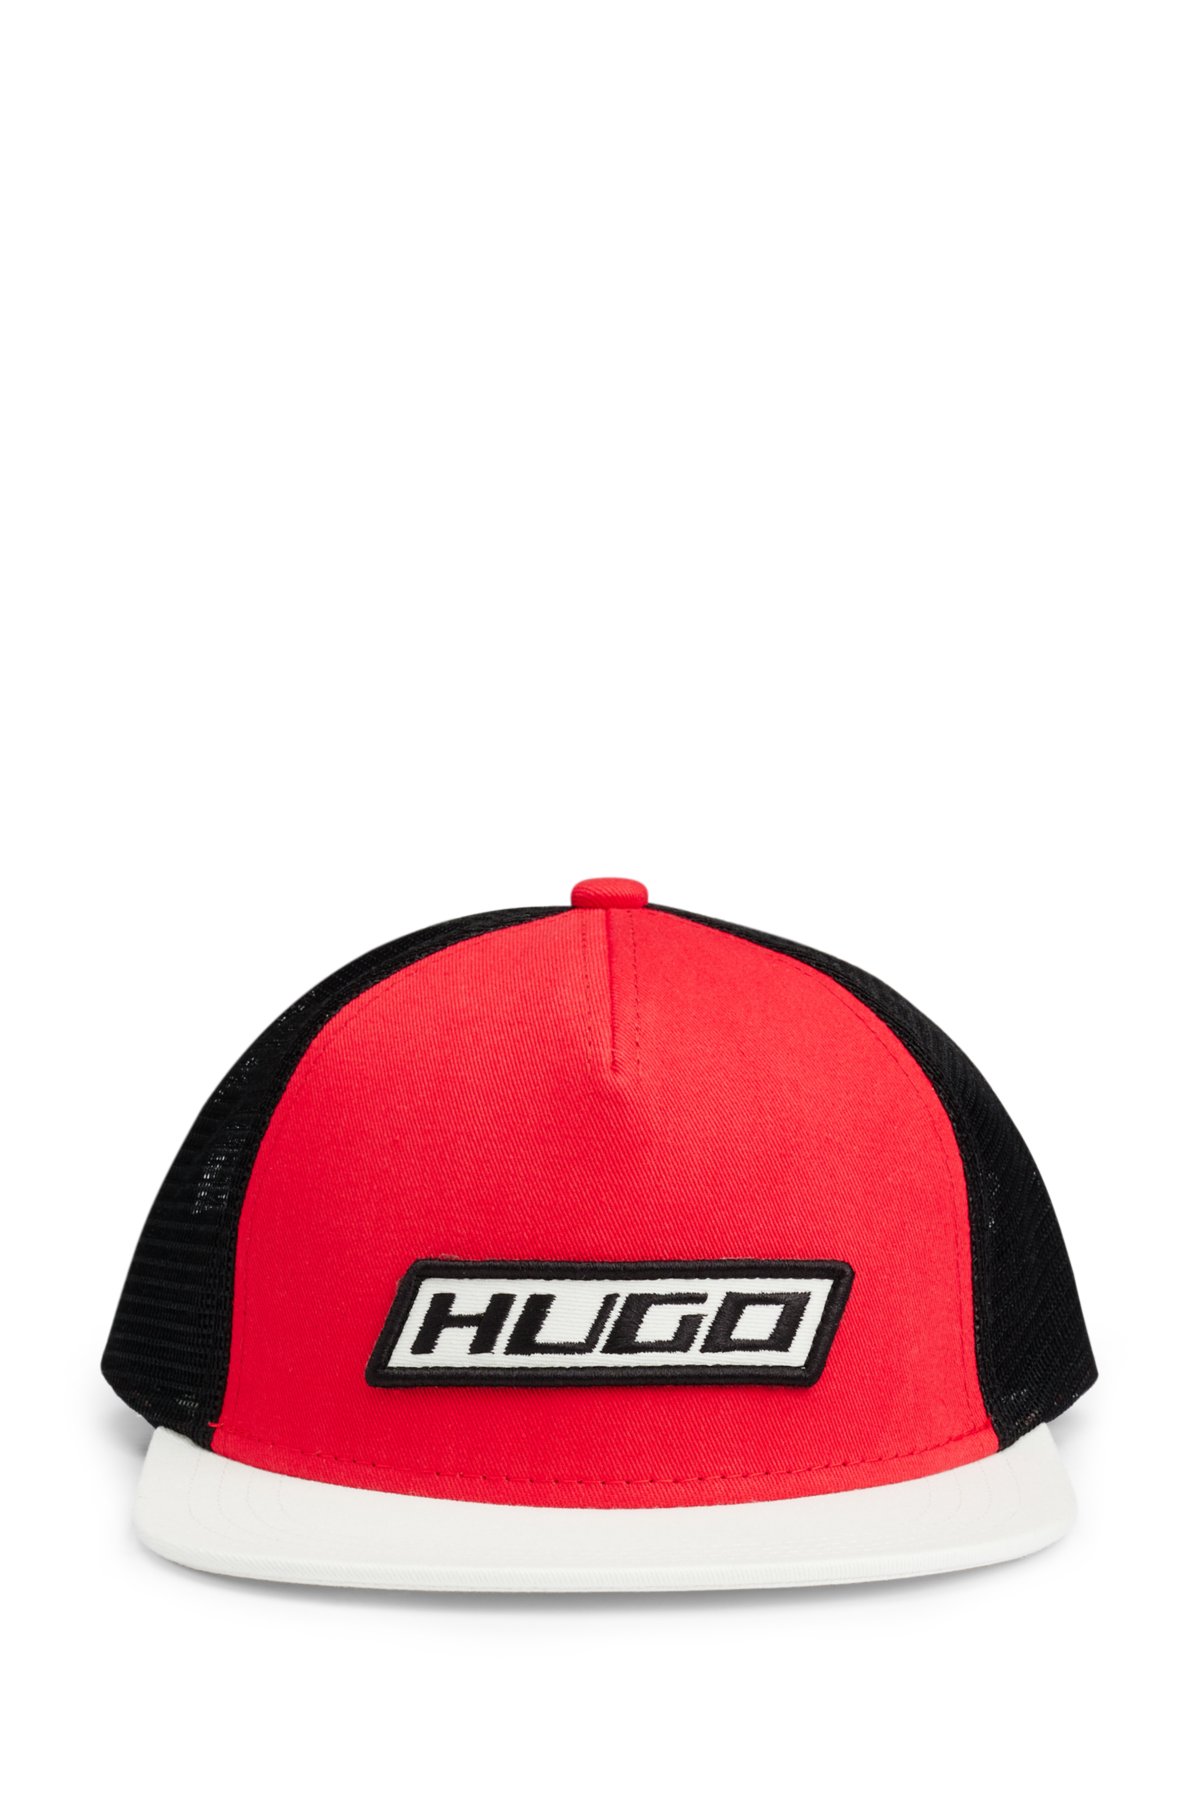 Hugo Men's Trucker Cap in Cotton Twill with racing-inspired Details - Hats